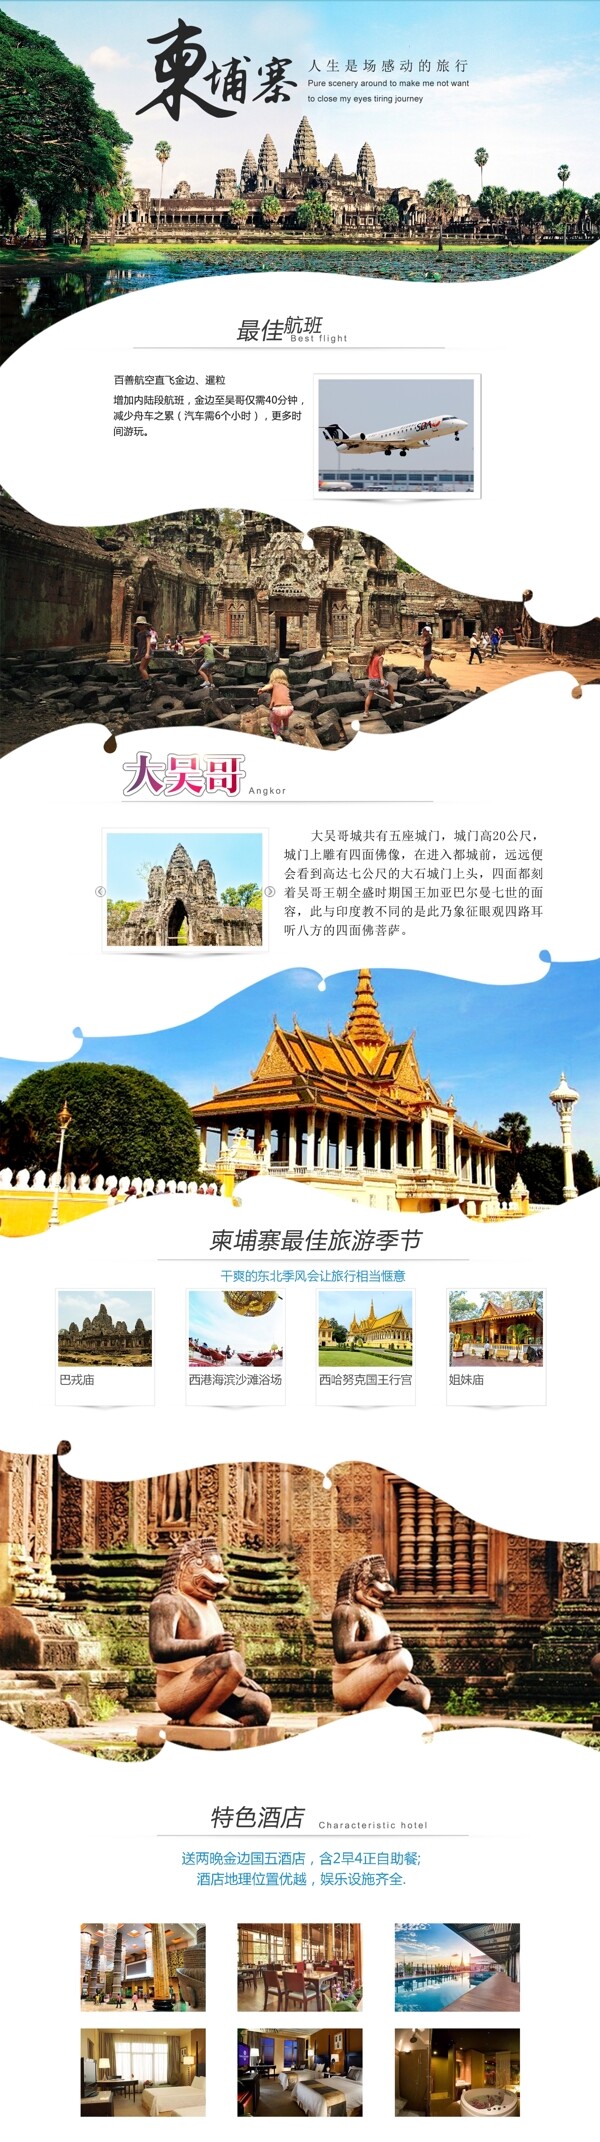 柬埔寨旅游详情海报